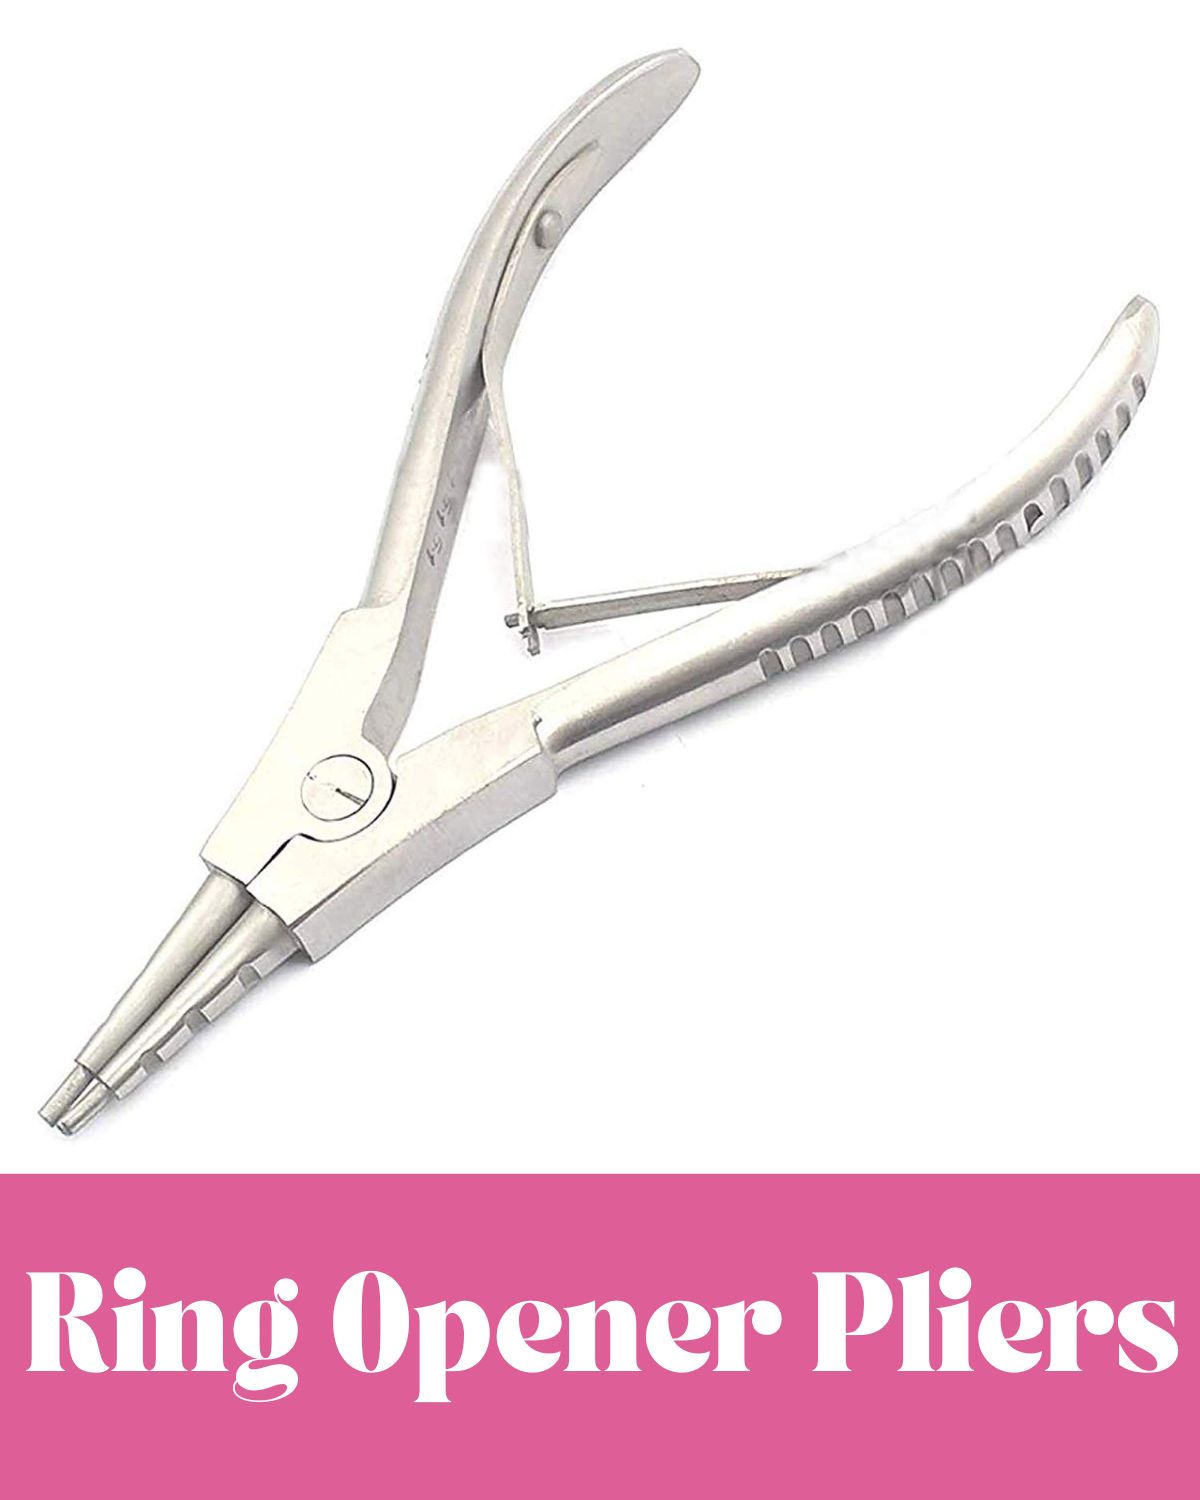 Ring opener pliers